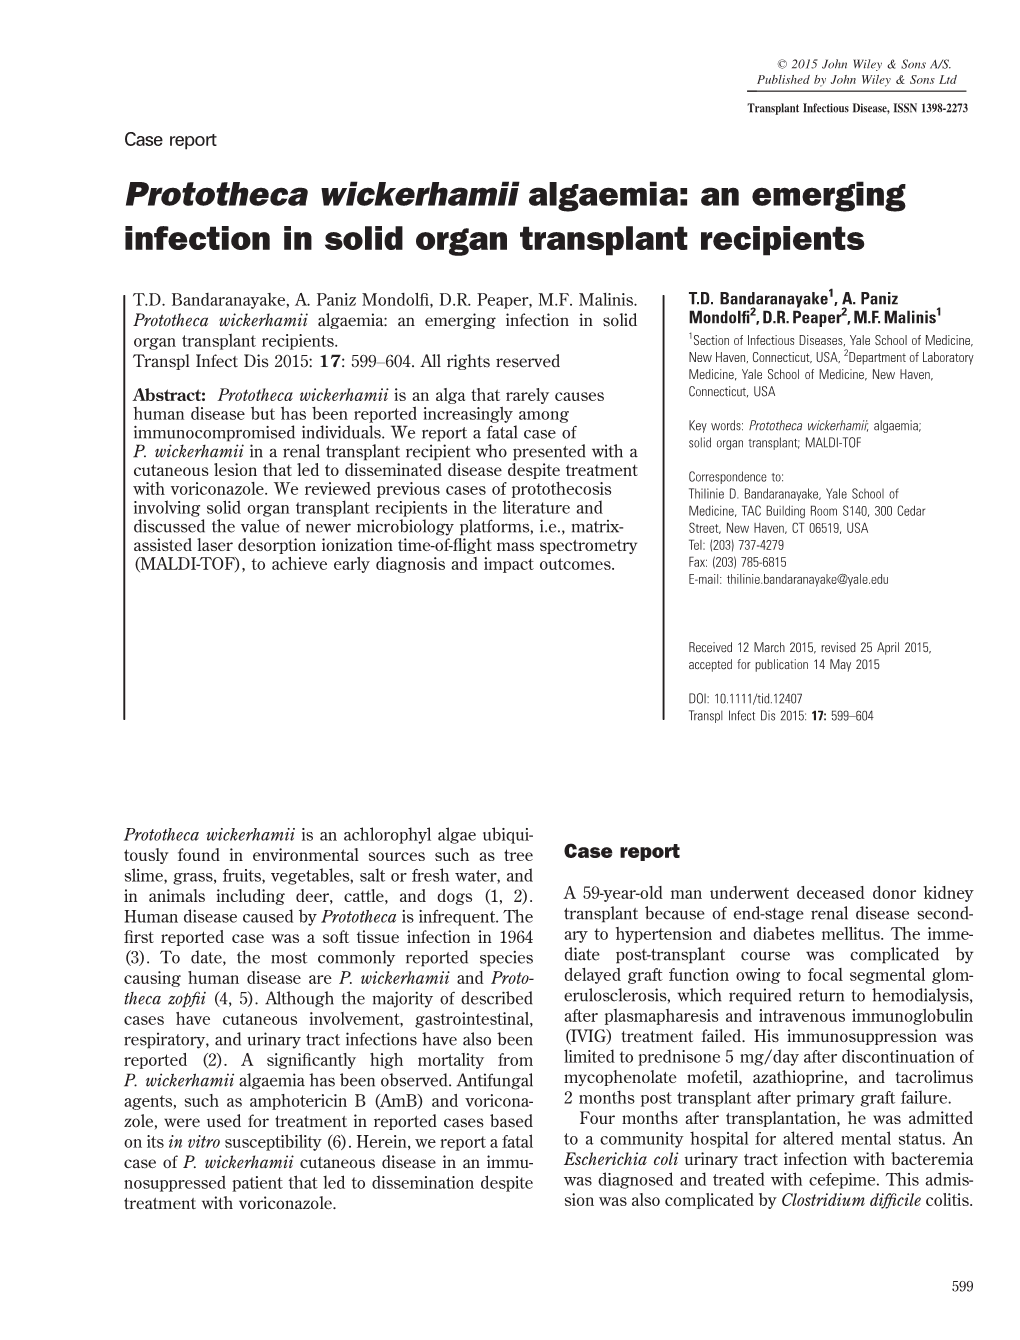 Prototheca Wickerhamii Algaemia: an Emerging Infection in Solid Organ Transplant Recipients